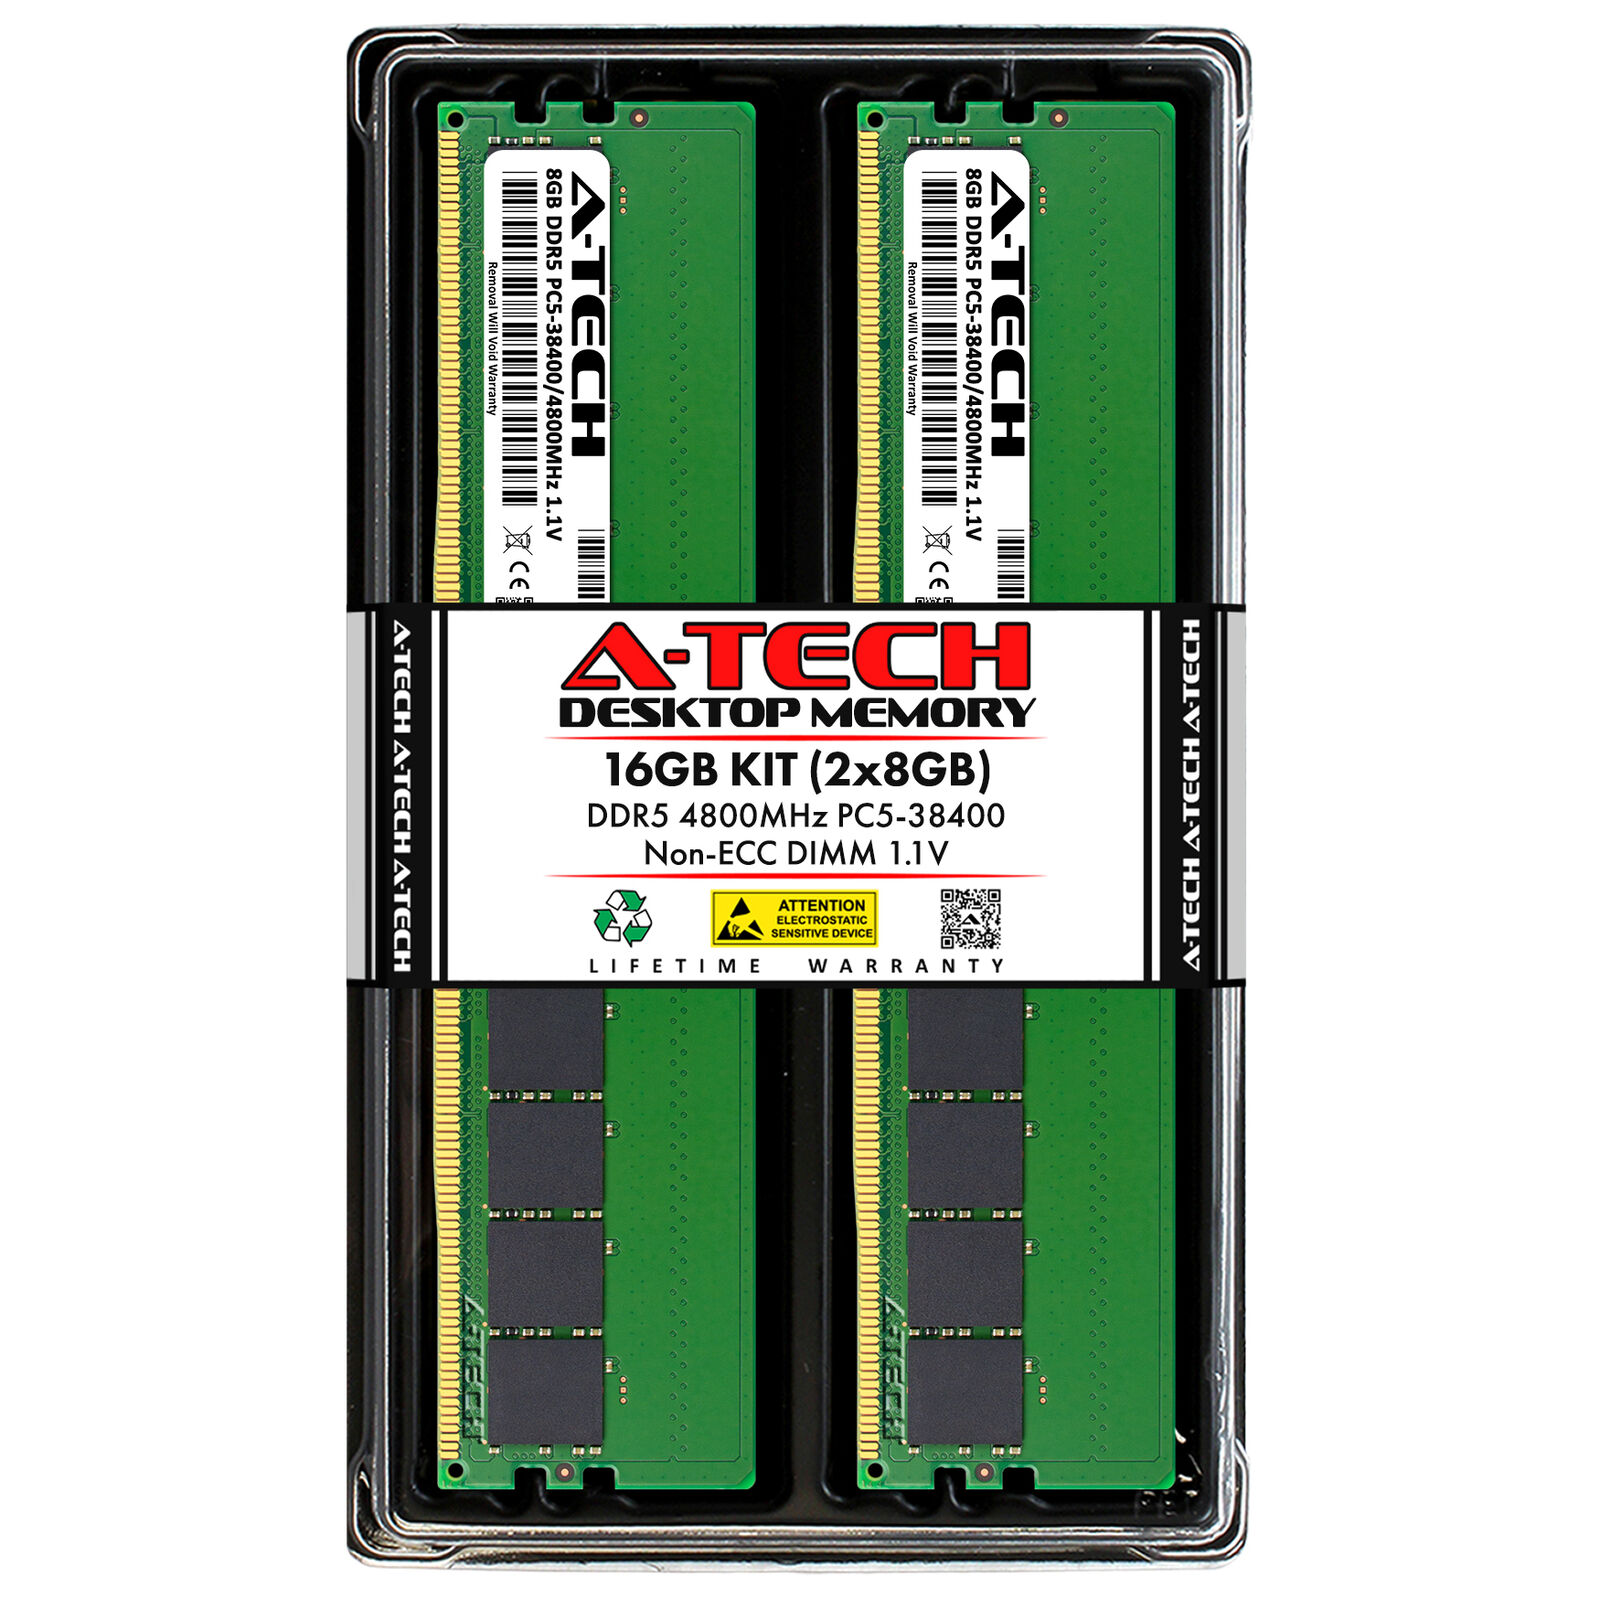 A-Tech 16GB Kit (2x 8GB) DDR5 4800 MHz Desktop PC5-38400 DIMM 288-Pin Memory RAM